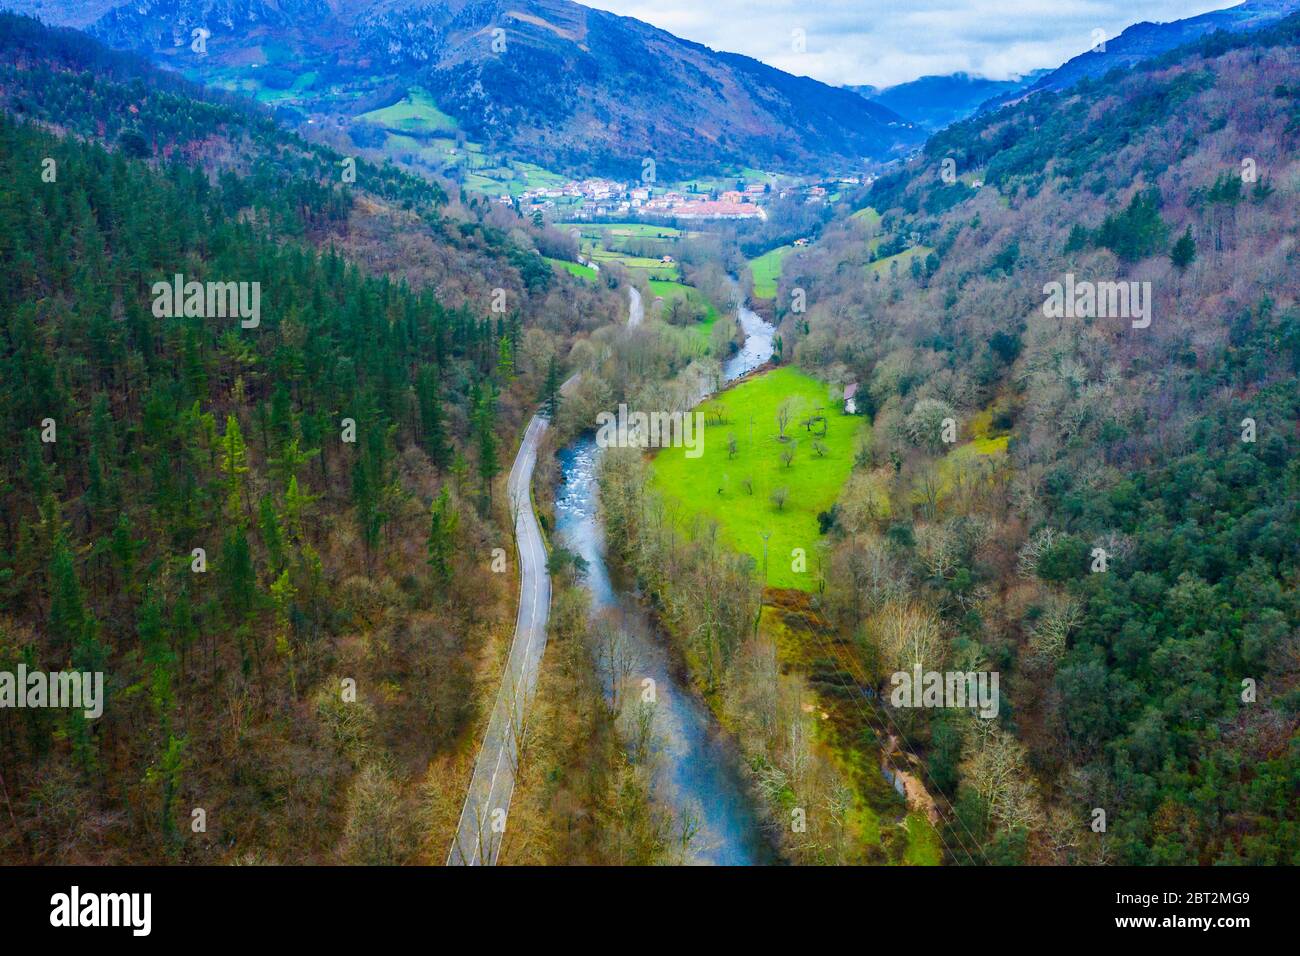 Vista aerea sul fiume e sulla valle. Foto Stock